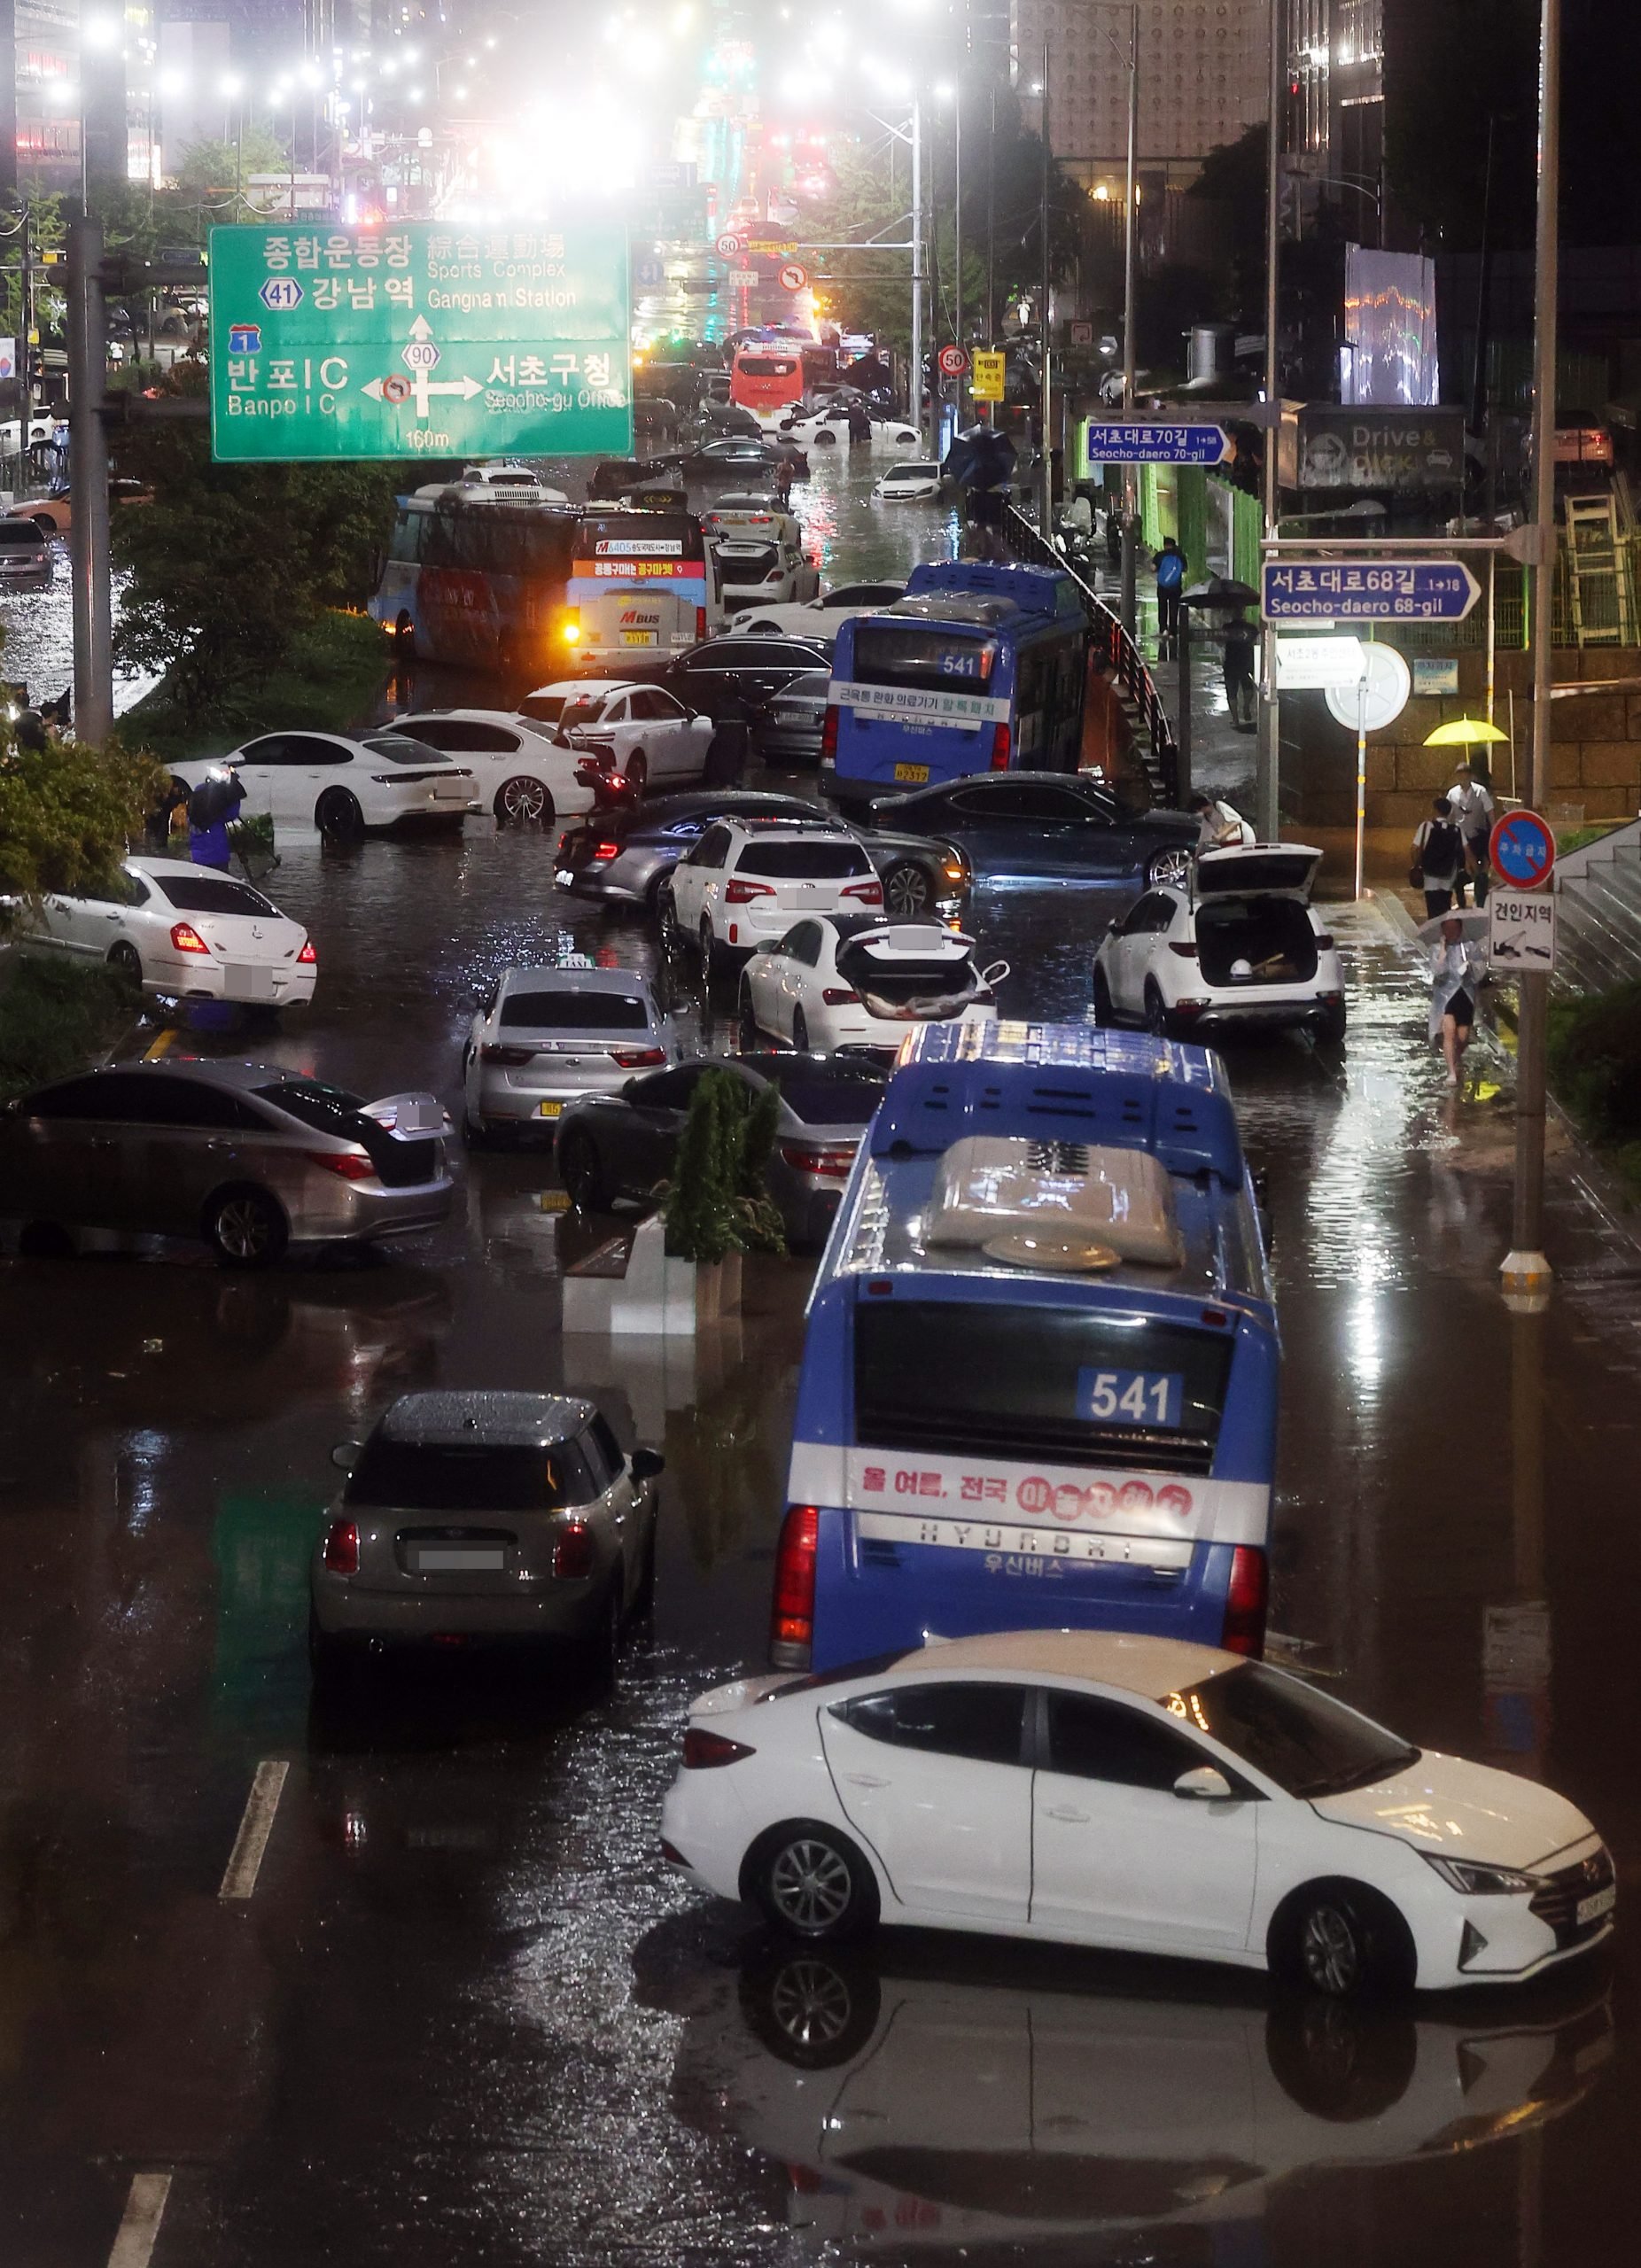  首尔首都圈80年来罕见暴雨 洪水吞车地铁站现“大瀑布”7死6失踪